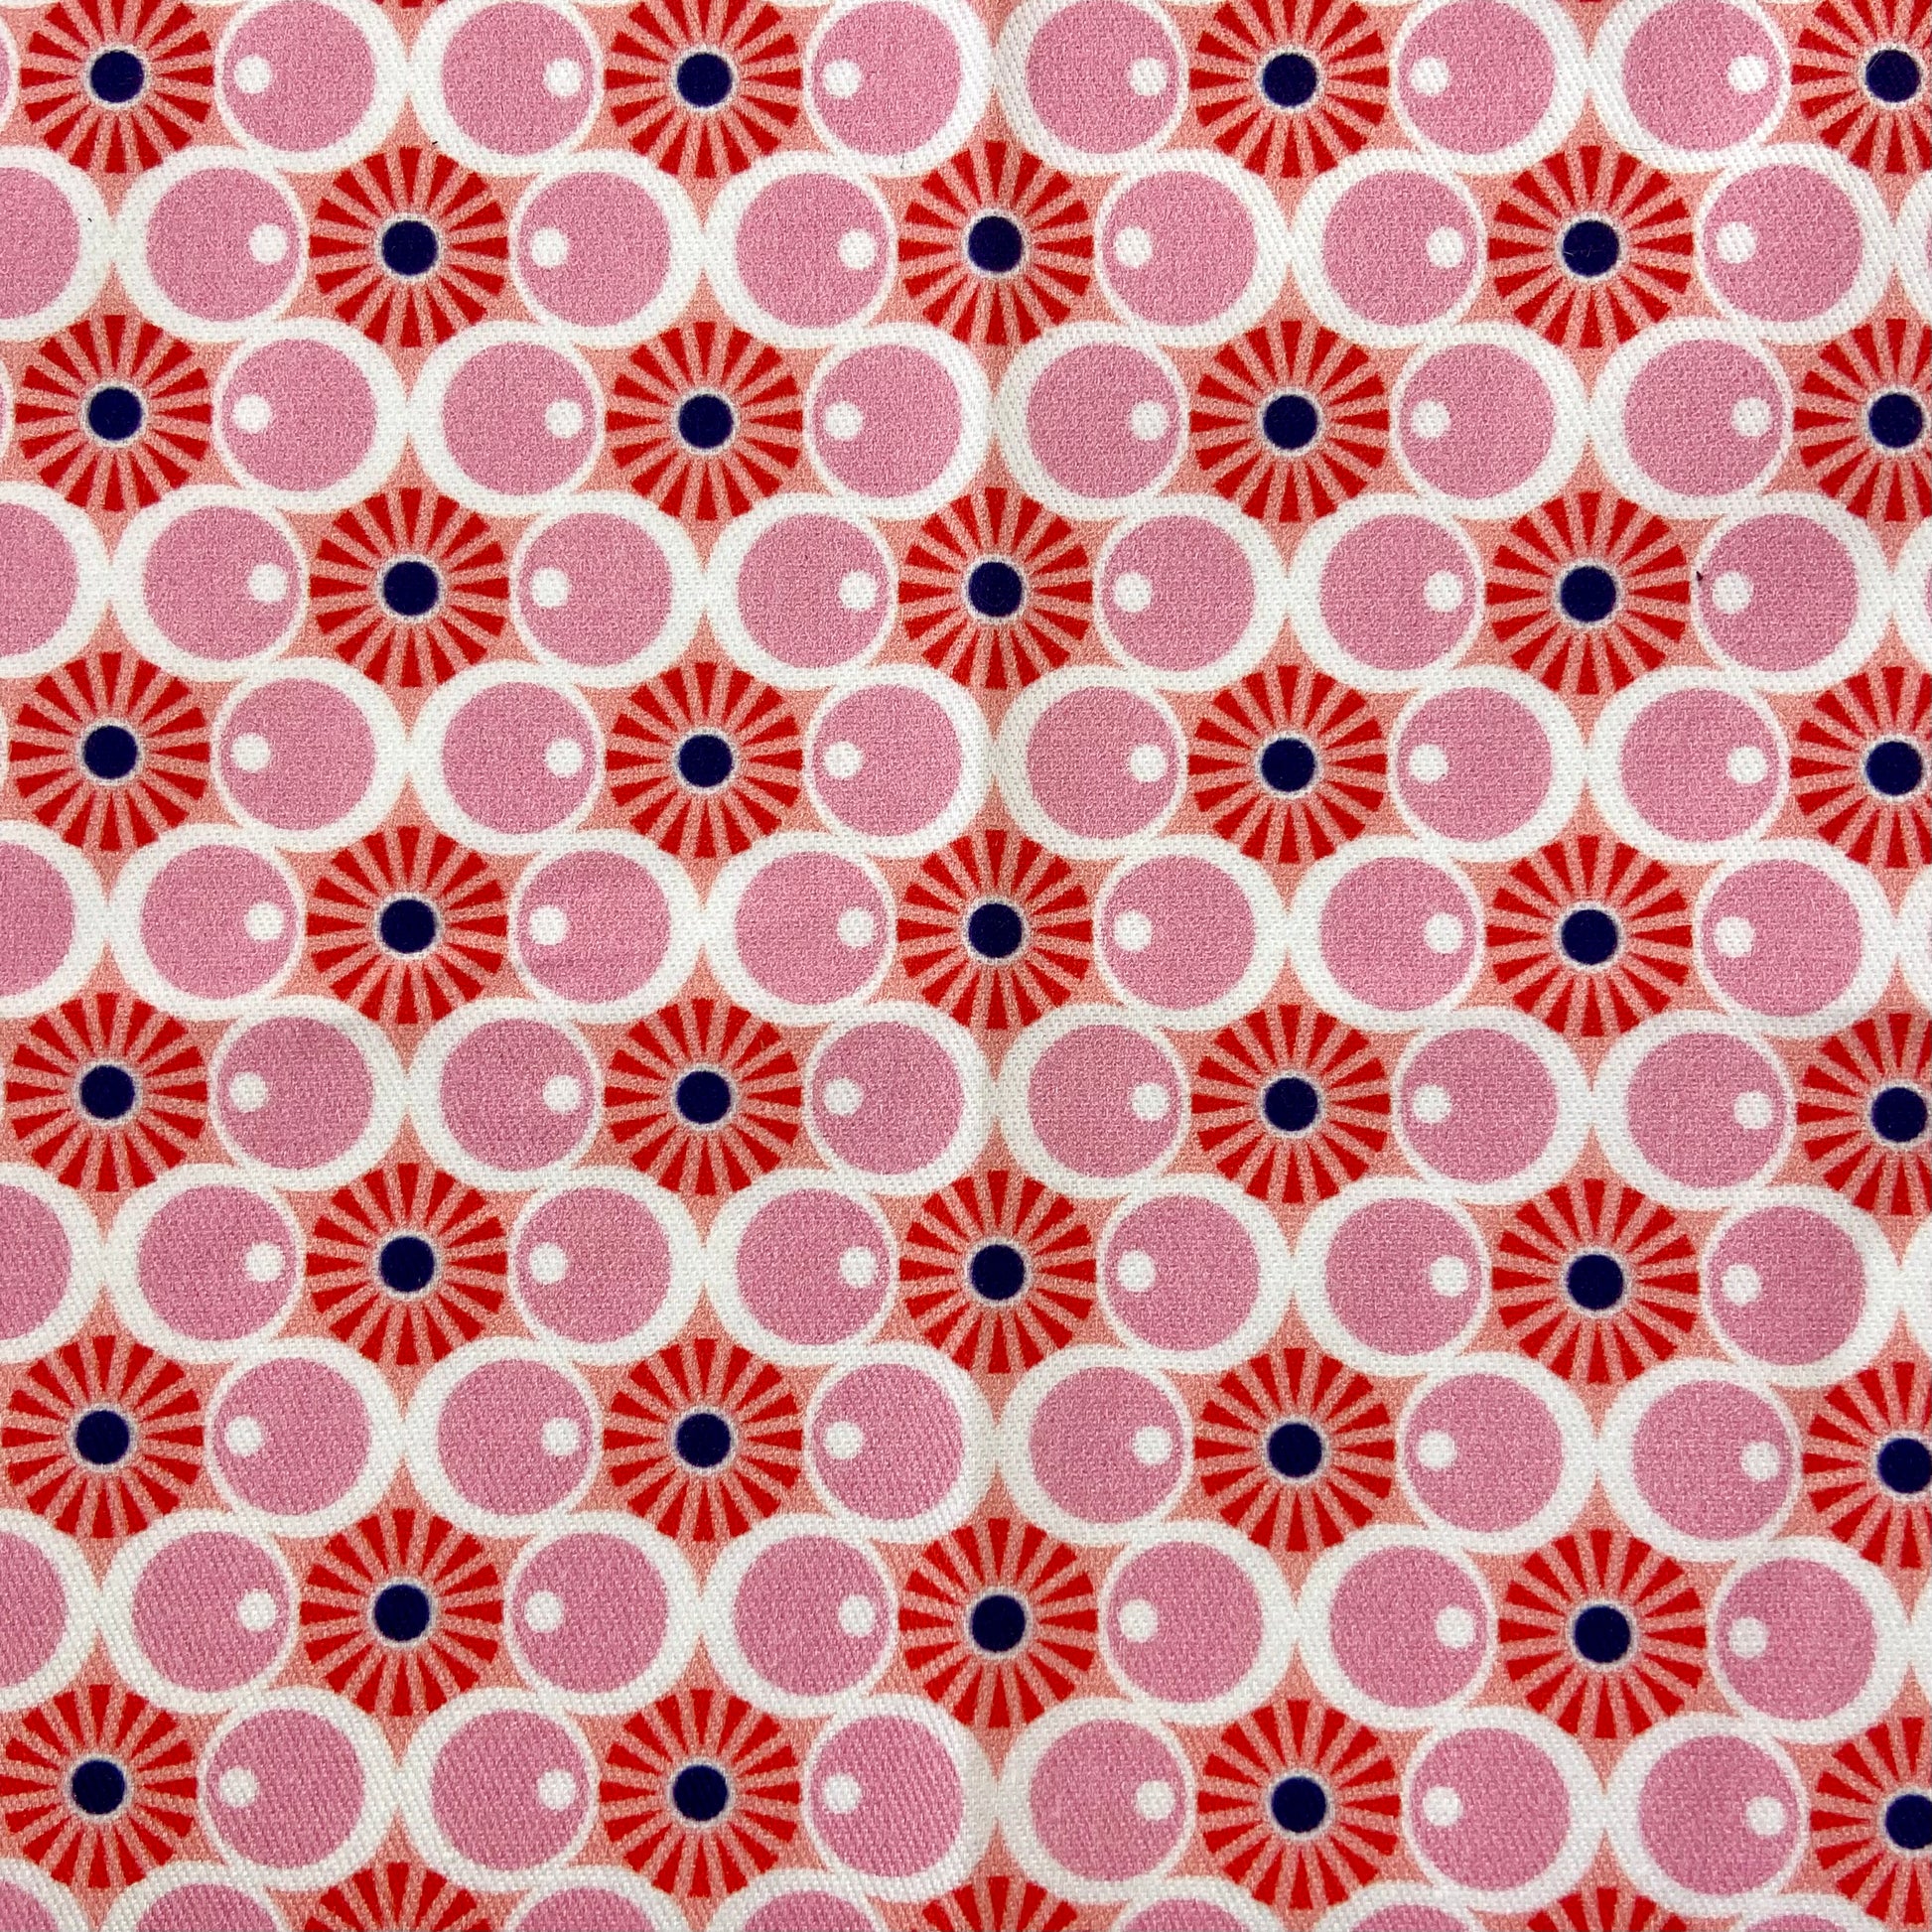 Sergé de coton imprimé motifs rose bulles années 50 mid-century vintage pop soleil orange cercles ronds 